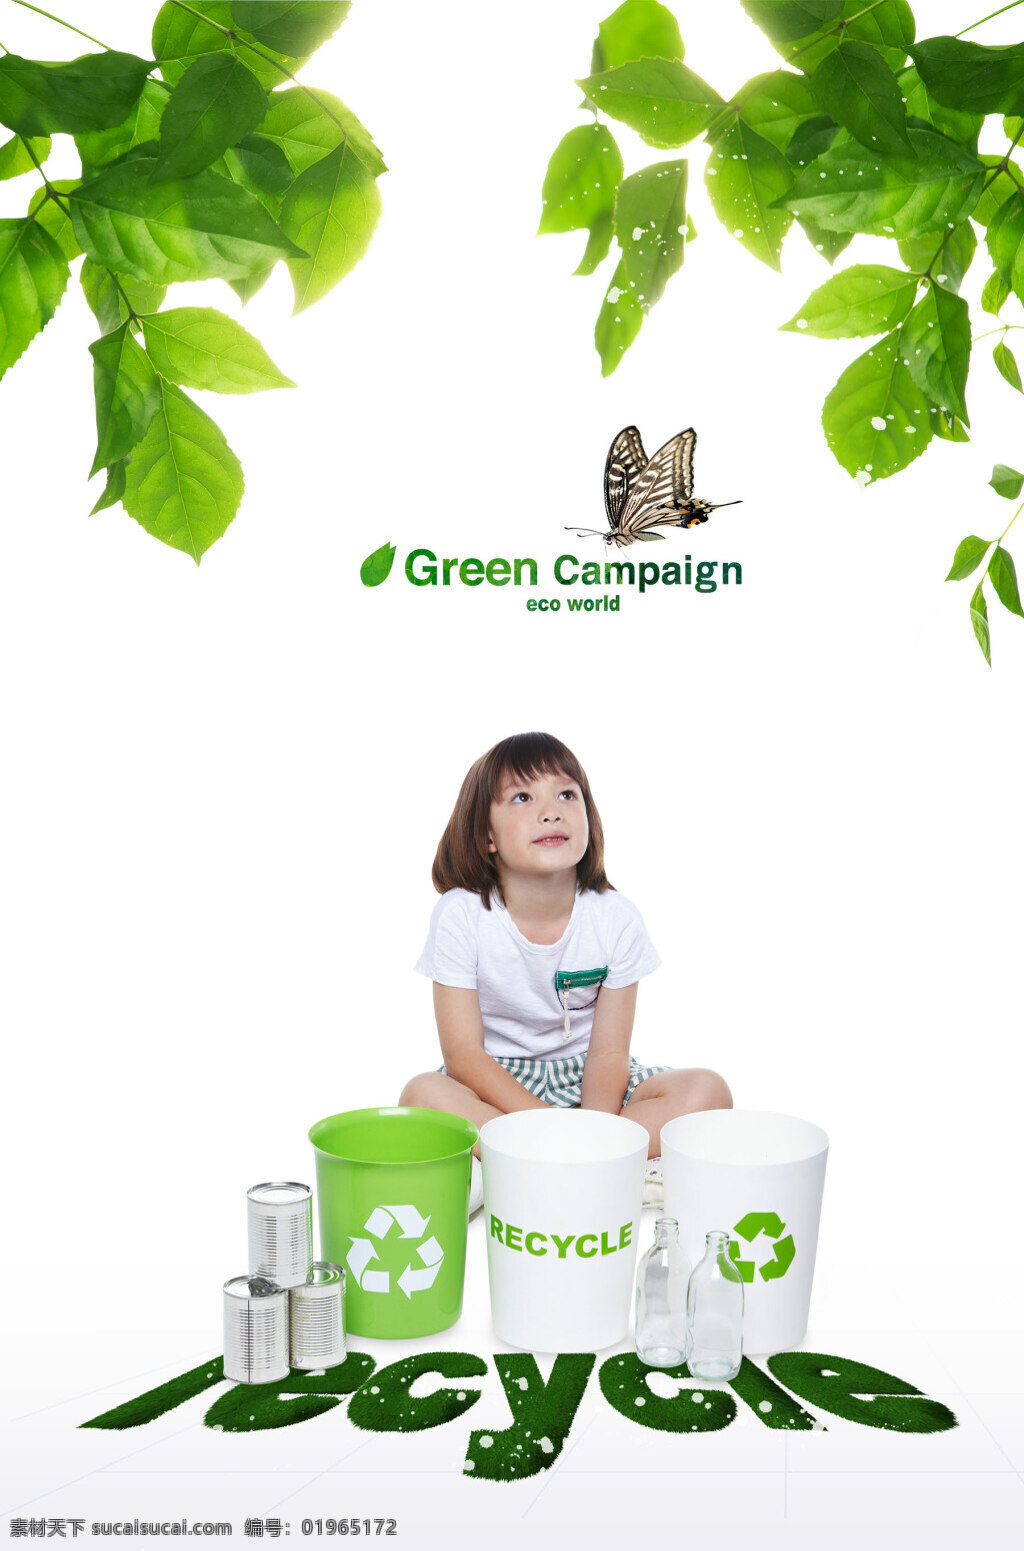 创意 小女孩 环保 垃圾桶 环保海报 绿色环保 生态环保 环境保护 公益广告海报 展板模板 广告设计模板 psd素材